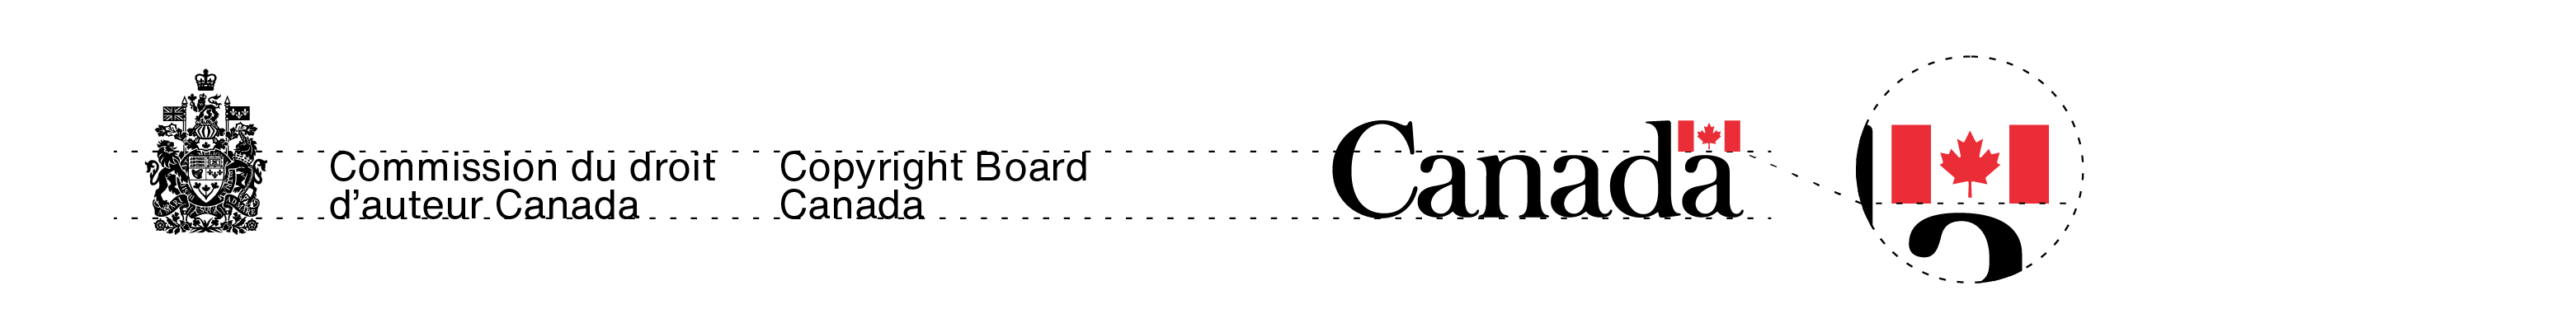 La signature avec armoiries de la Commission du droit d’auteur Canada et le mot-symbole « Canada » dans leurs couleurs standards. La proportion de leurs tailles est expliquée dans le texte ci-dessus.